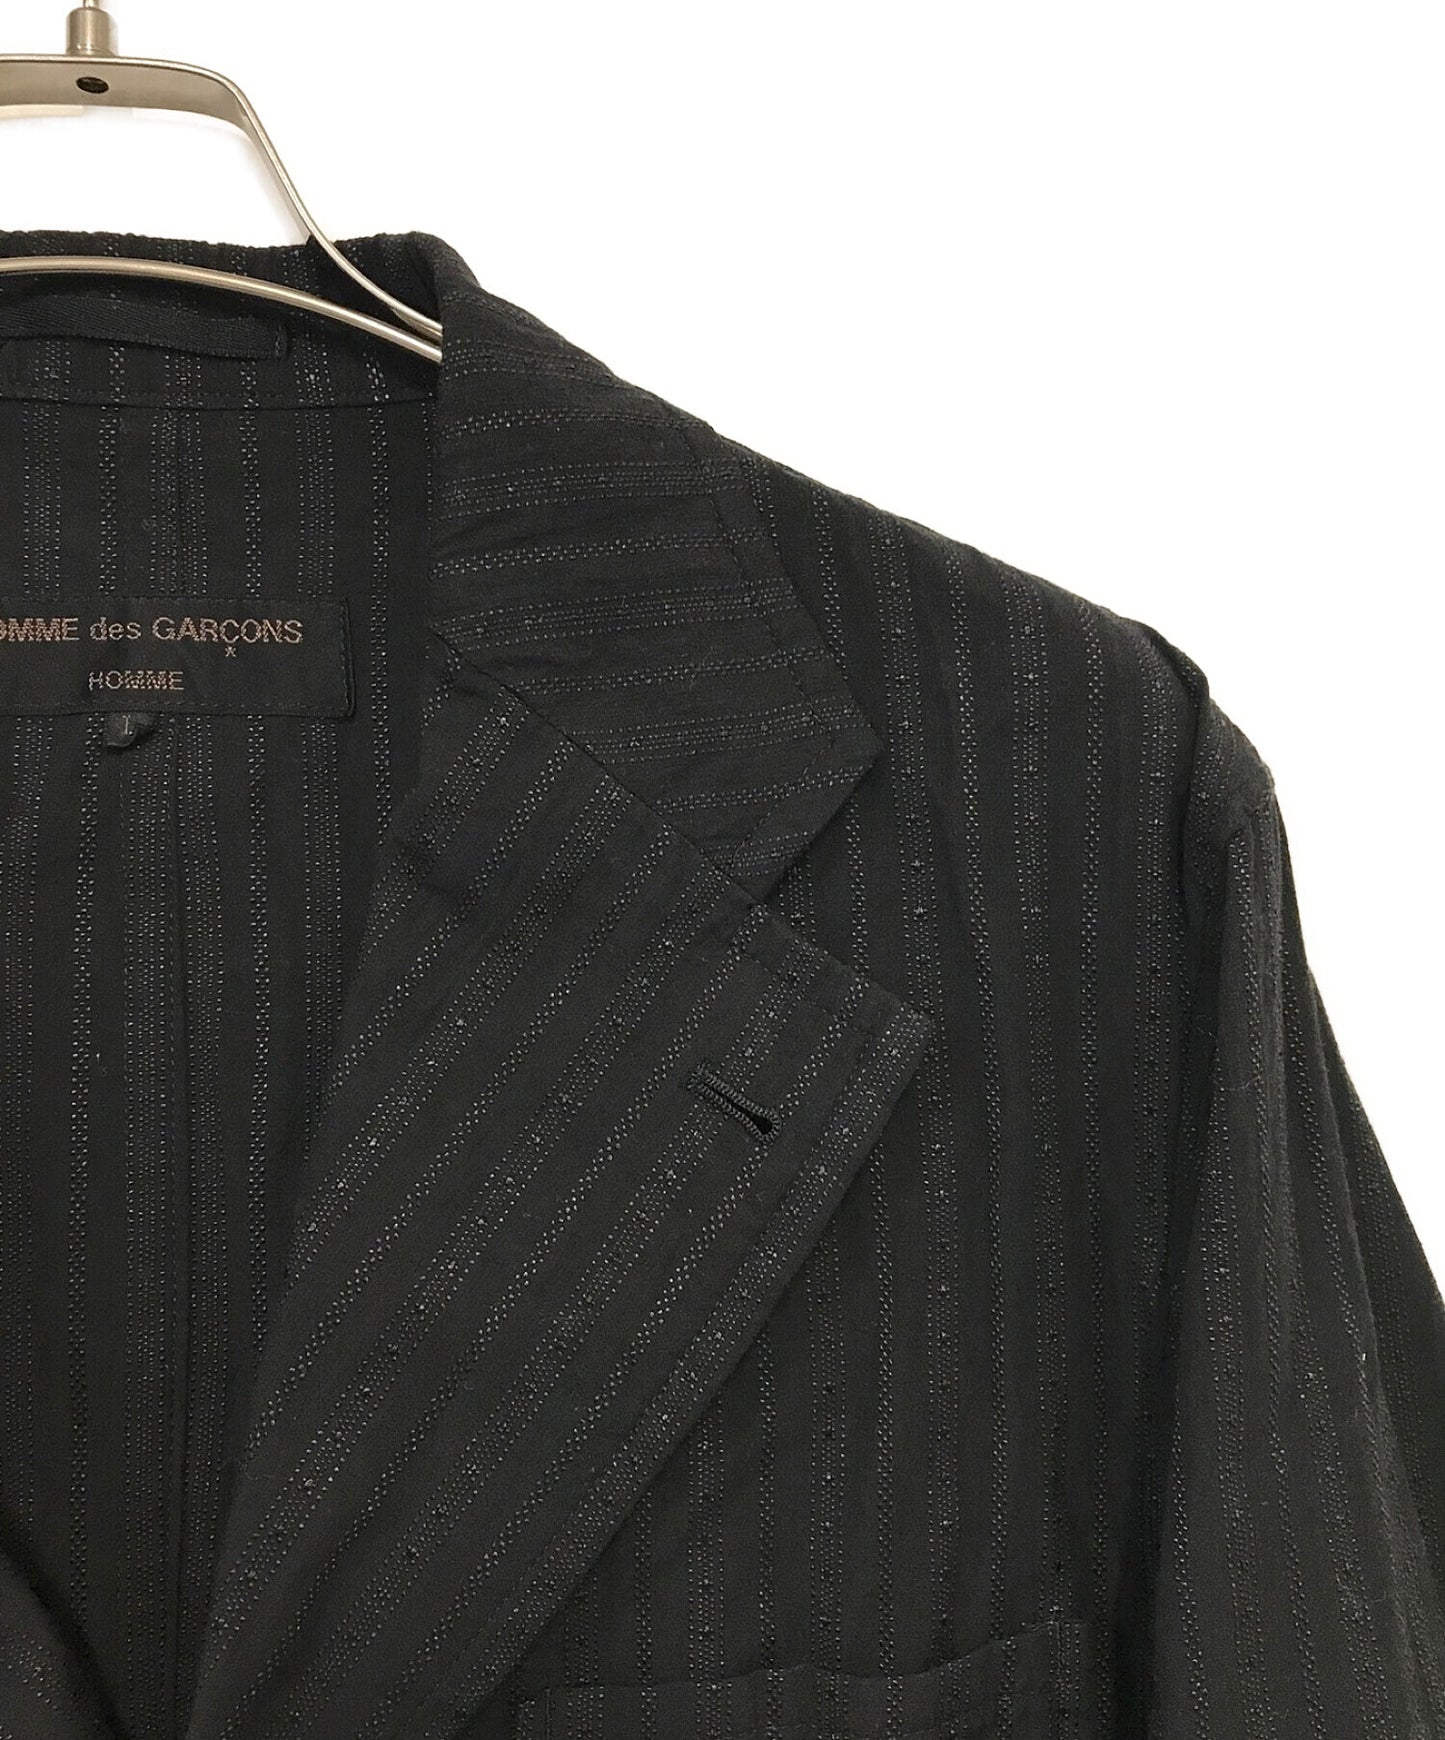 COMME des GARCONS HOMME Vintage Stitch Texture Jacket HK-J019